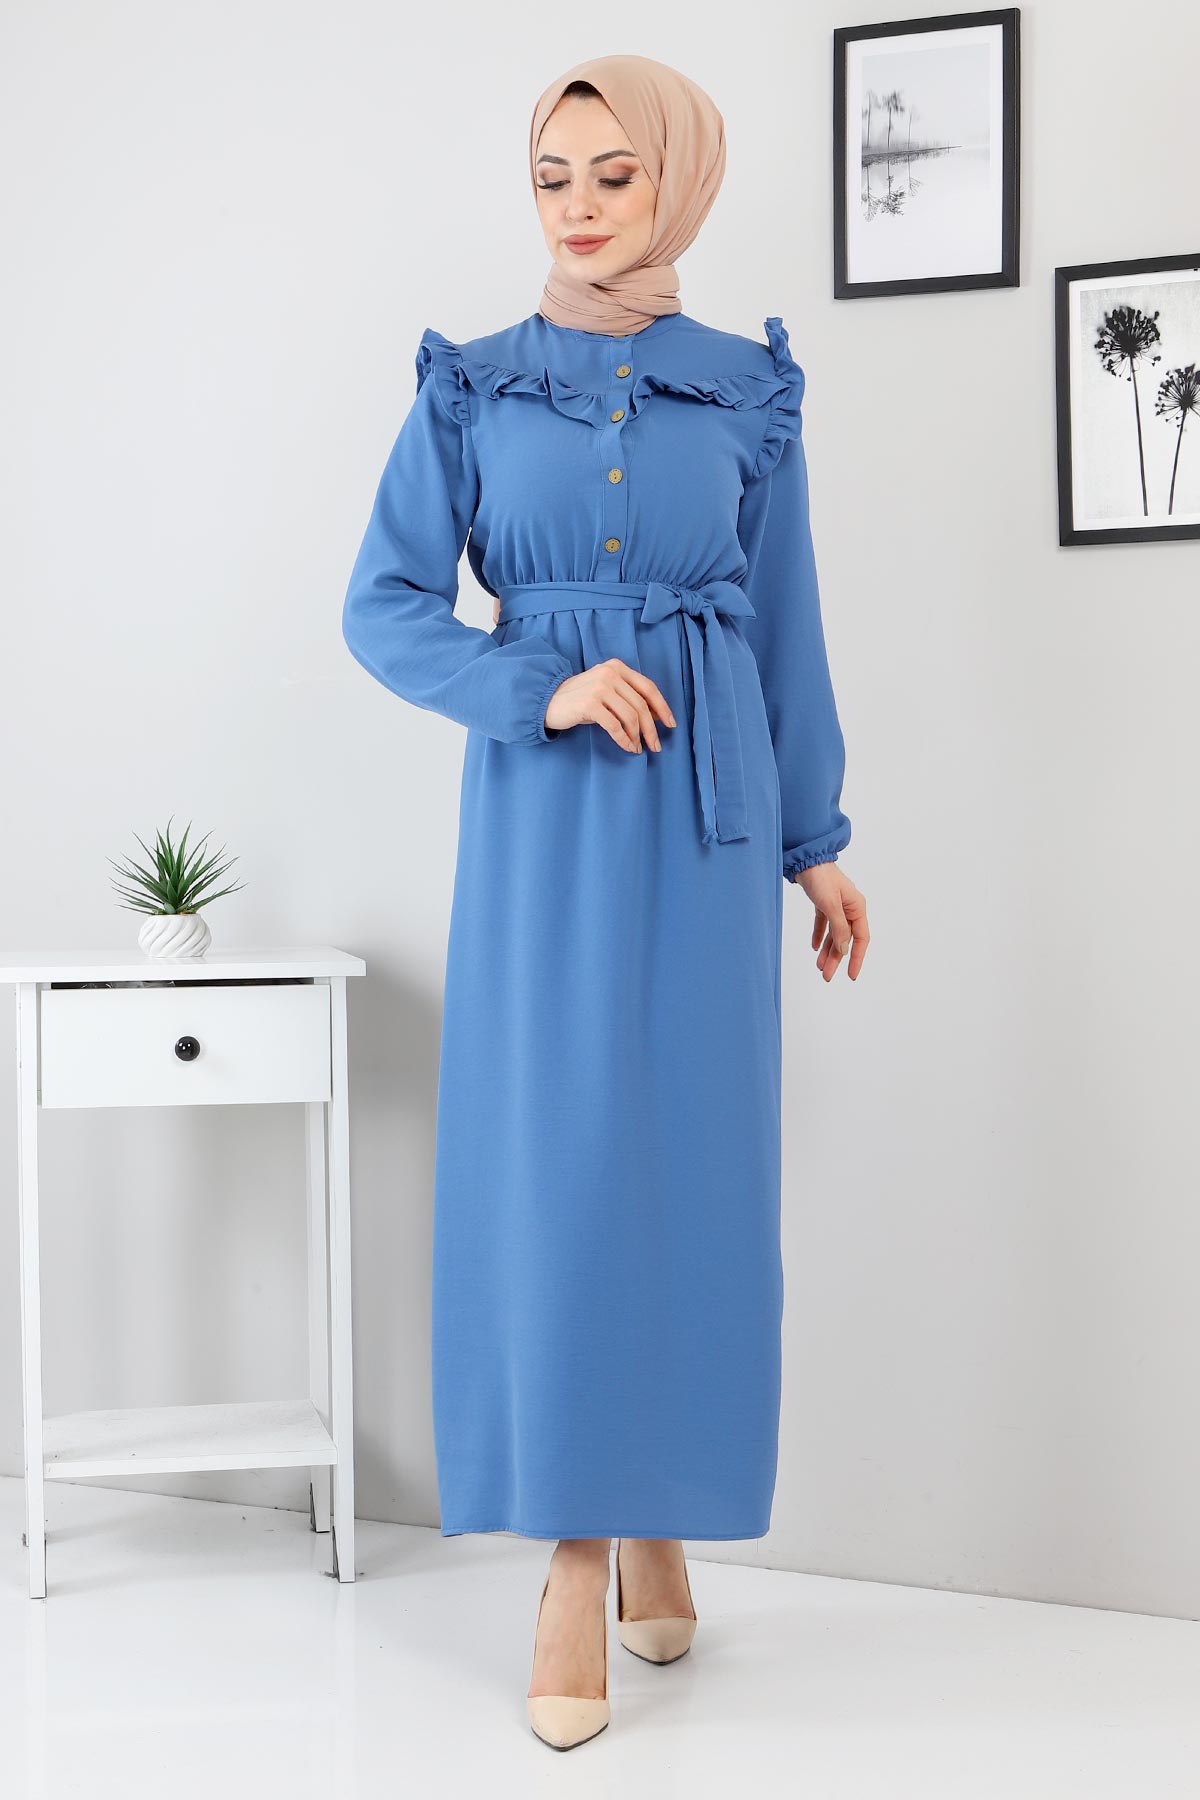 Tesettür Dünyası - Düğme Detaylı Elbise TSD220131 Mavi